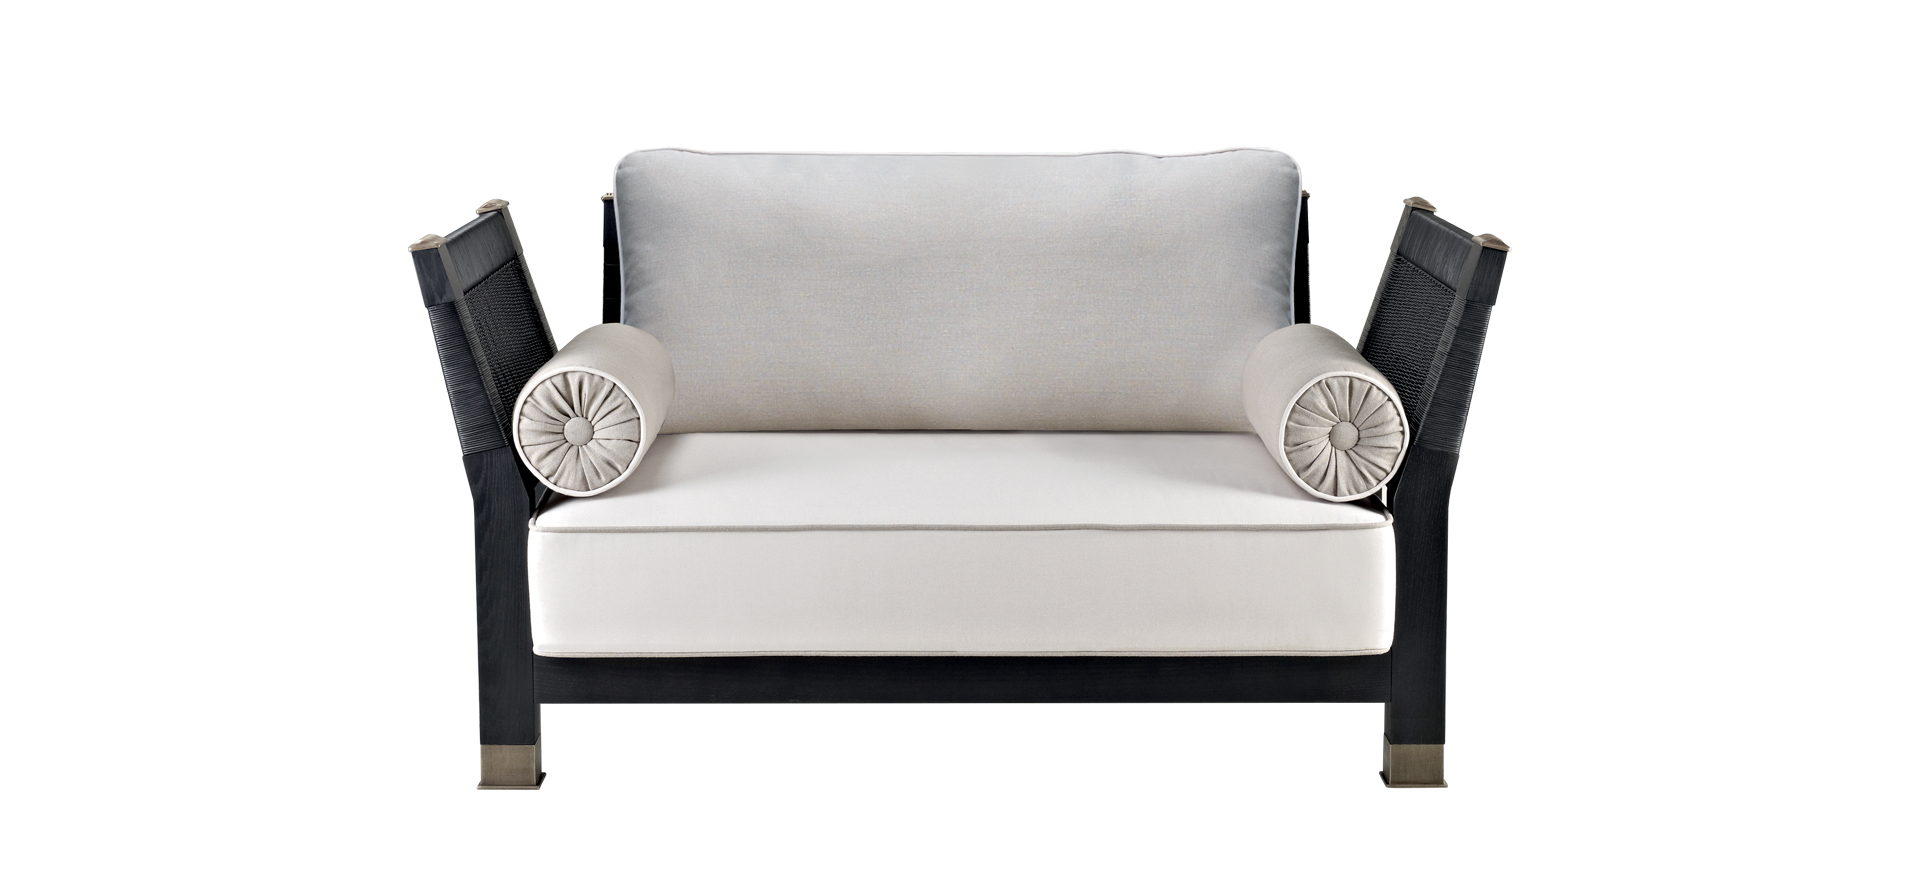 Moltrasio è un divano da esterni in legno con piedini e dettagli in bronzo, del catalogo da esterni di Promemoria | Promemoria